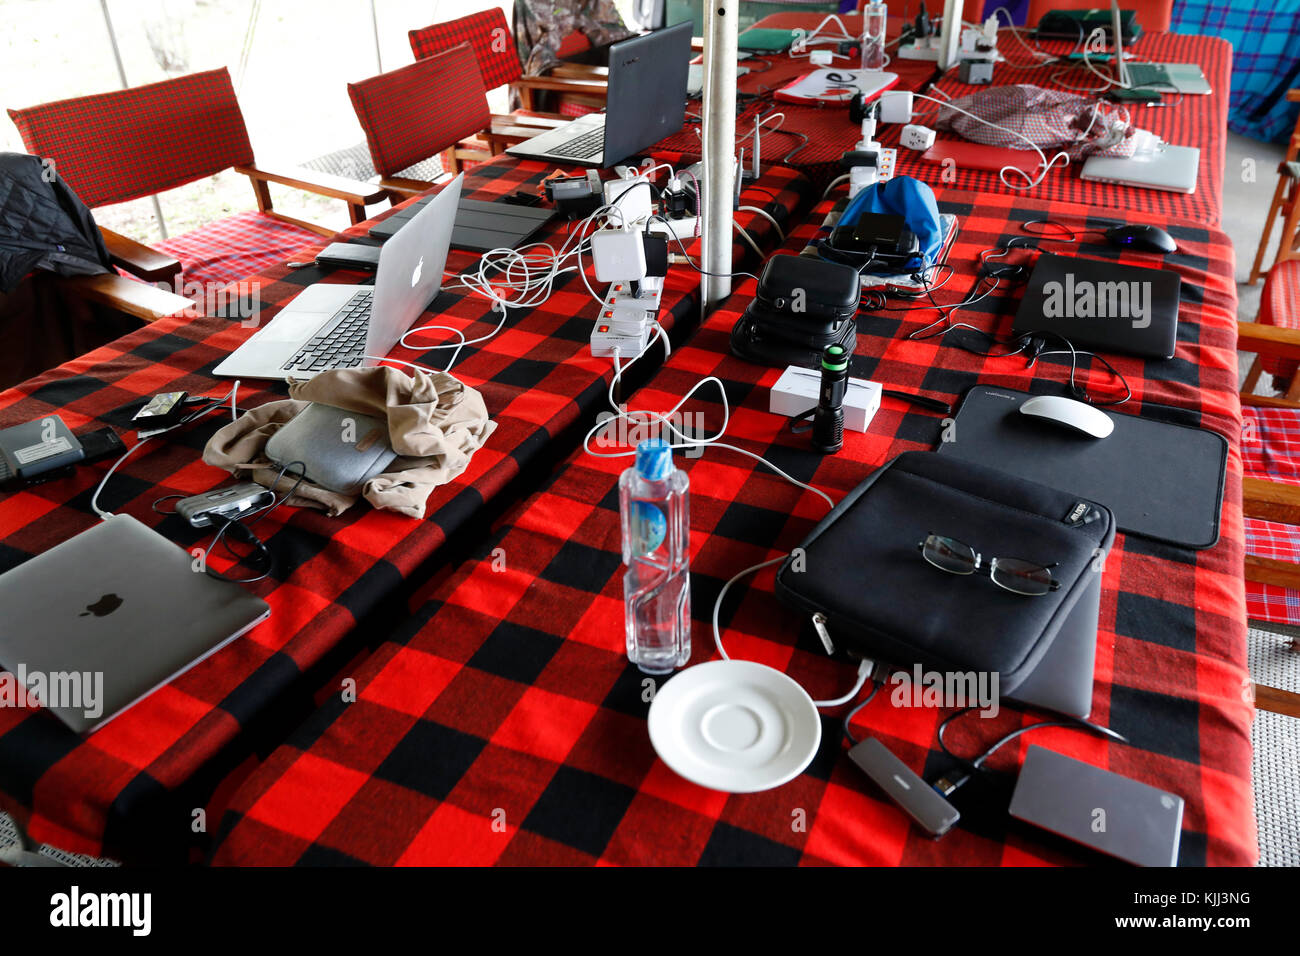 Ordinateur portable sur la table. Le Masai Mara. Au Kenya. Banque D'Images